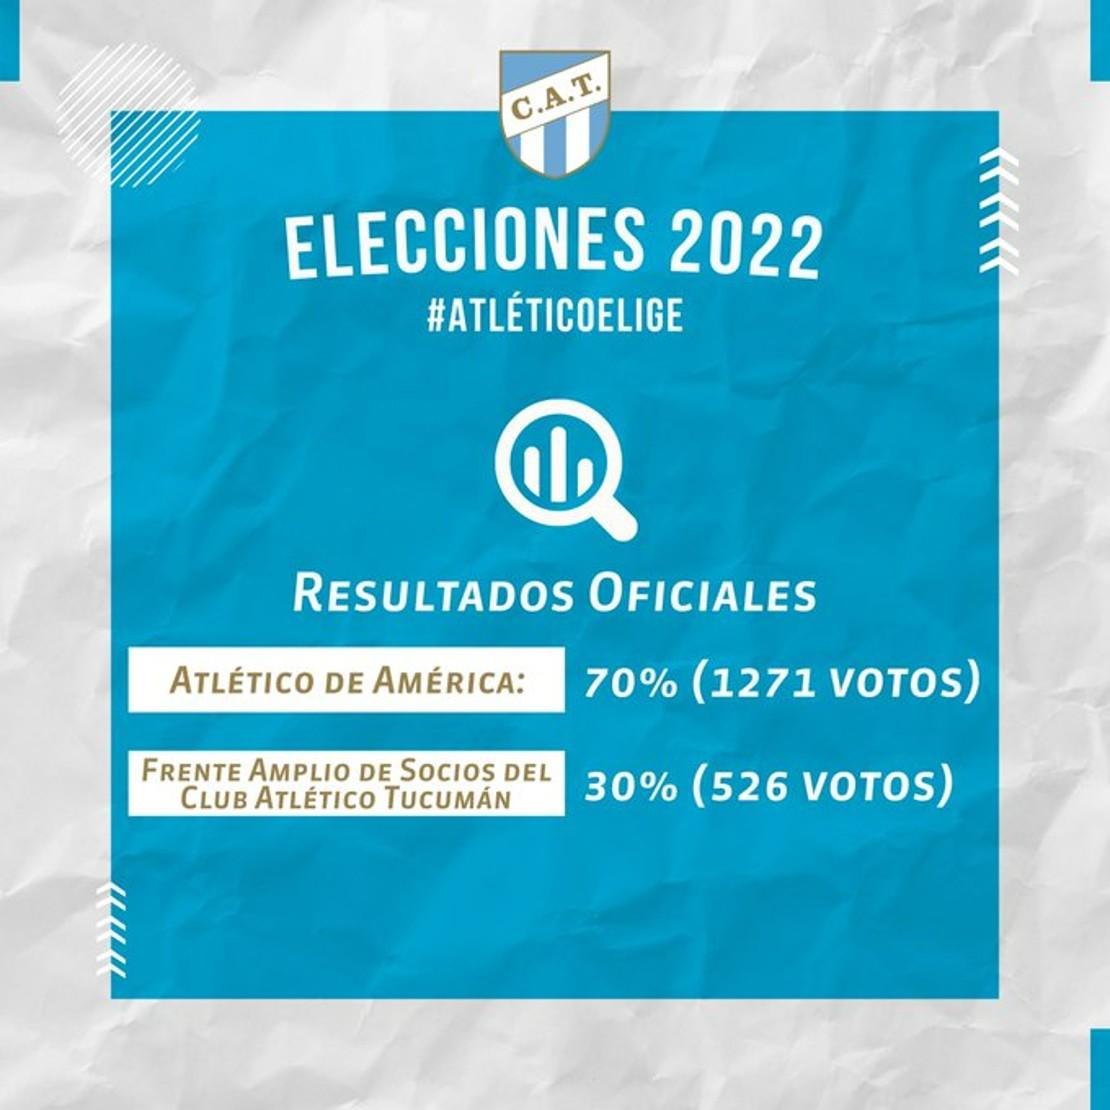 La lista Atlético de América ganó las elecciones con el 70% de los votos